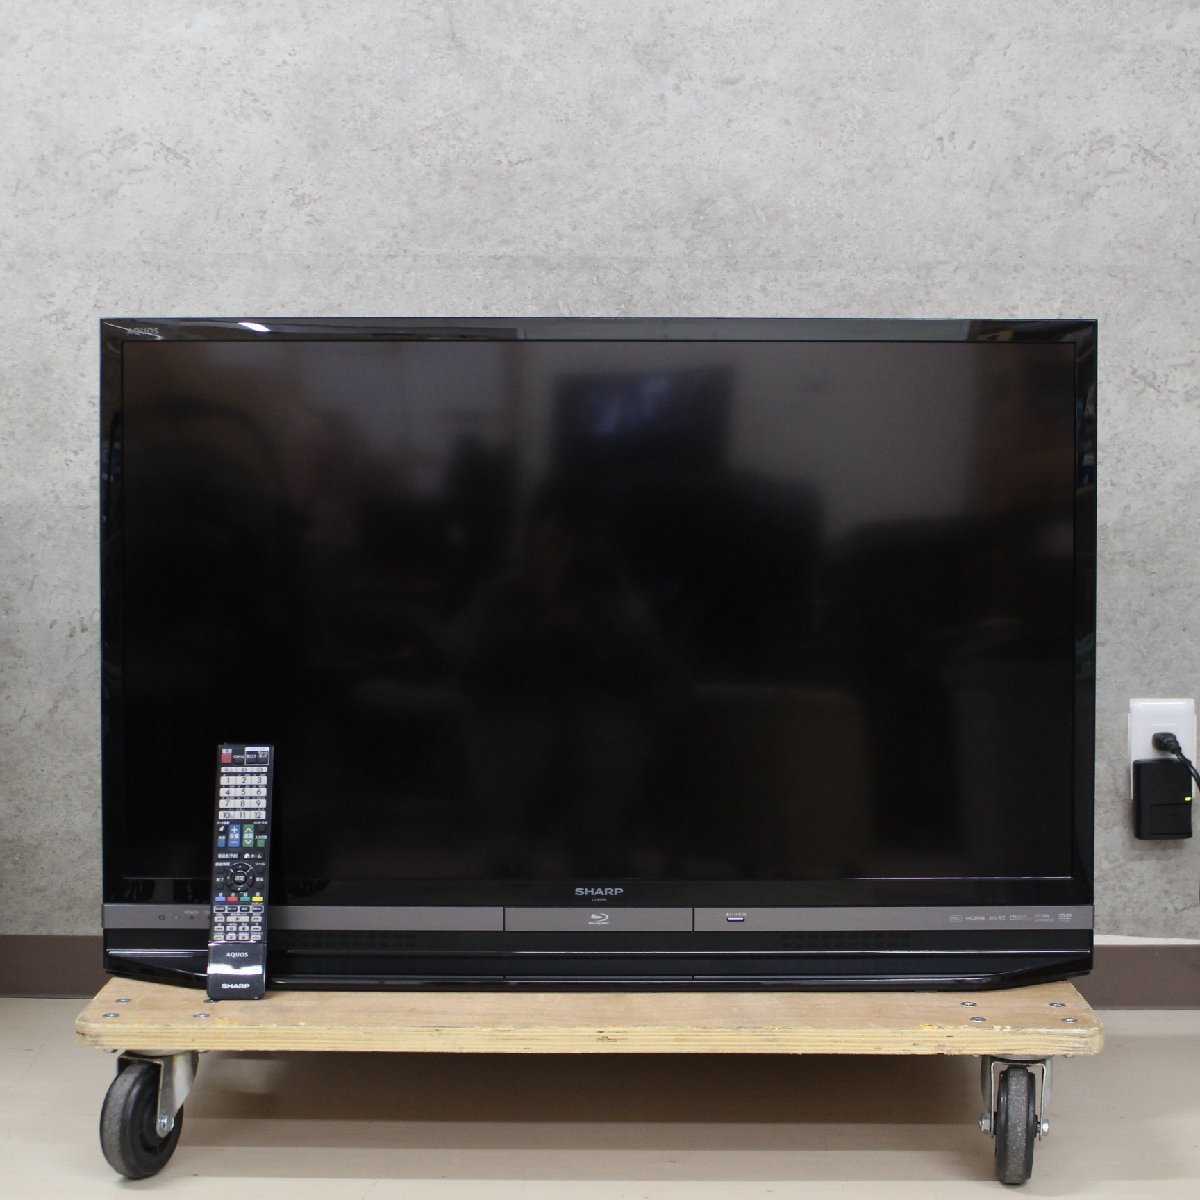 東京都豊島区にて SHARP AQUOS ブルーレイ内蔵 HDD搭載液晶テレビ LC-40DR9 2014年製 を出張買取させて頂きました。